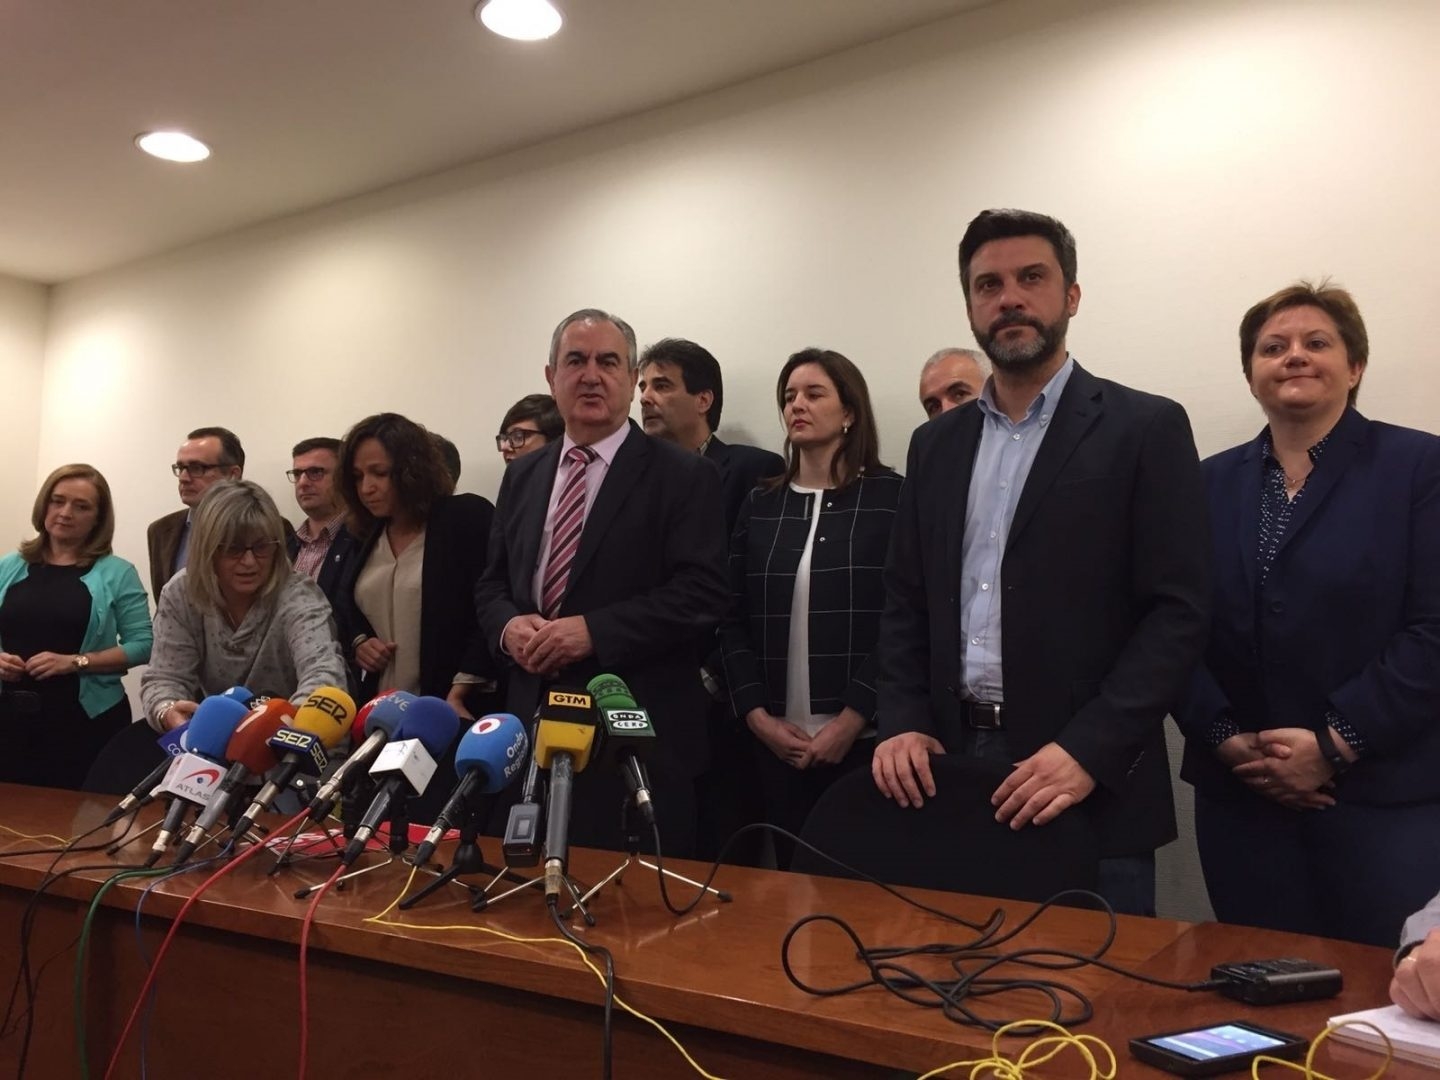 Rafael Gonzalez Tovar presenta la moción de censura del PSOE de Murcia